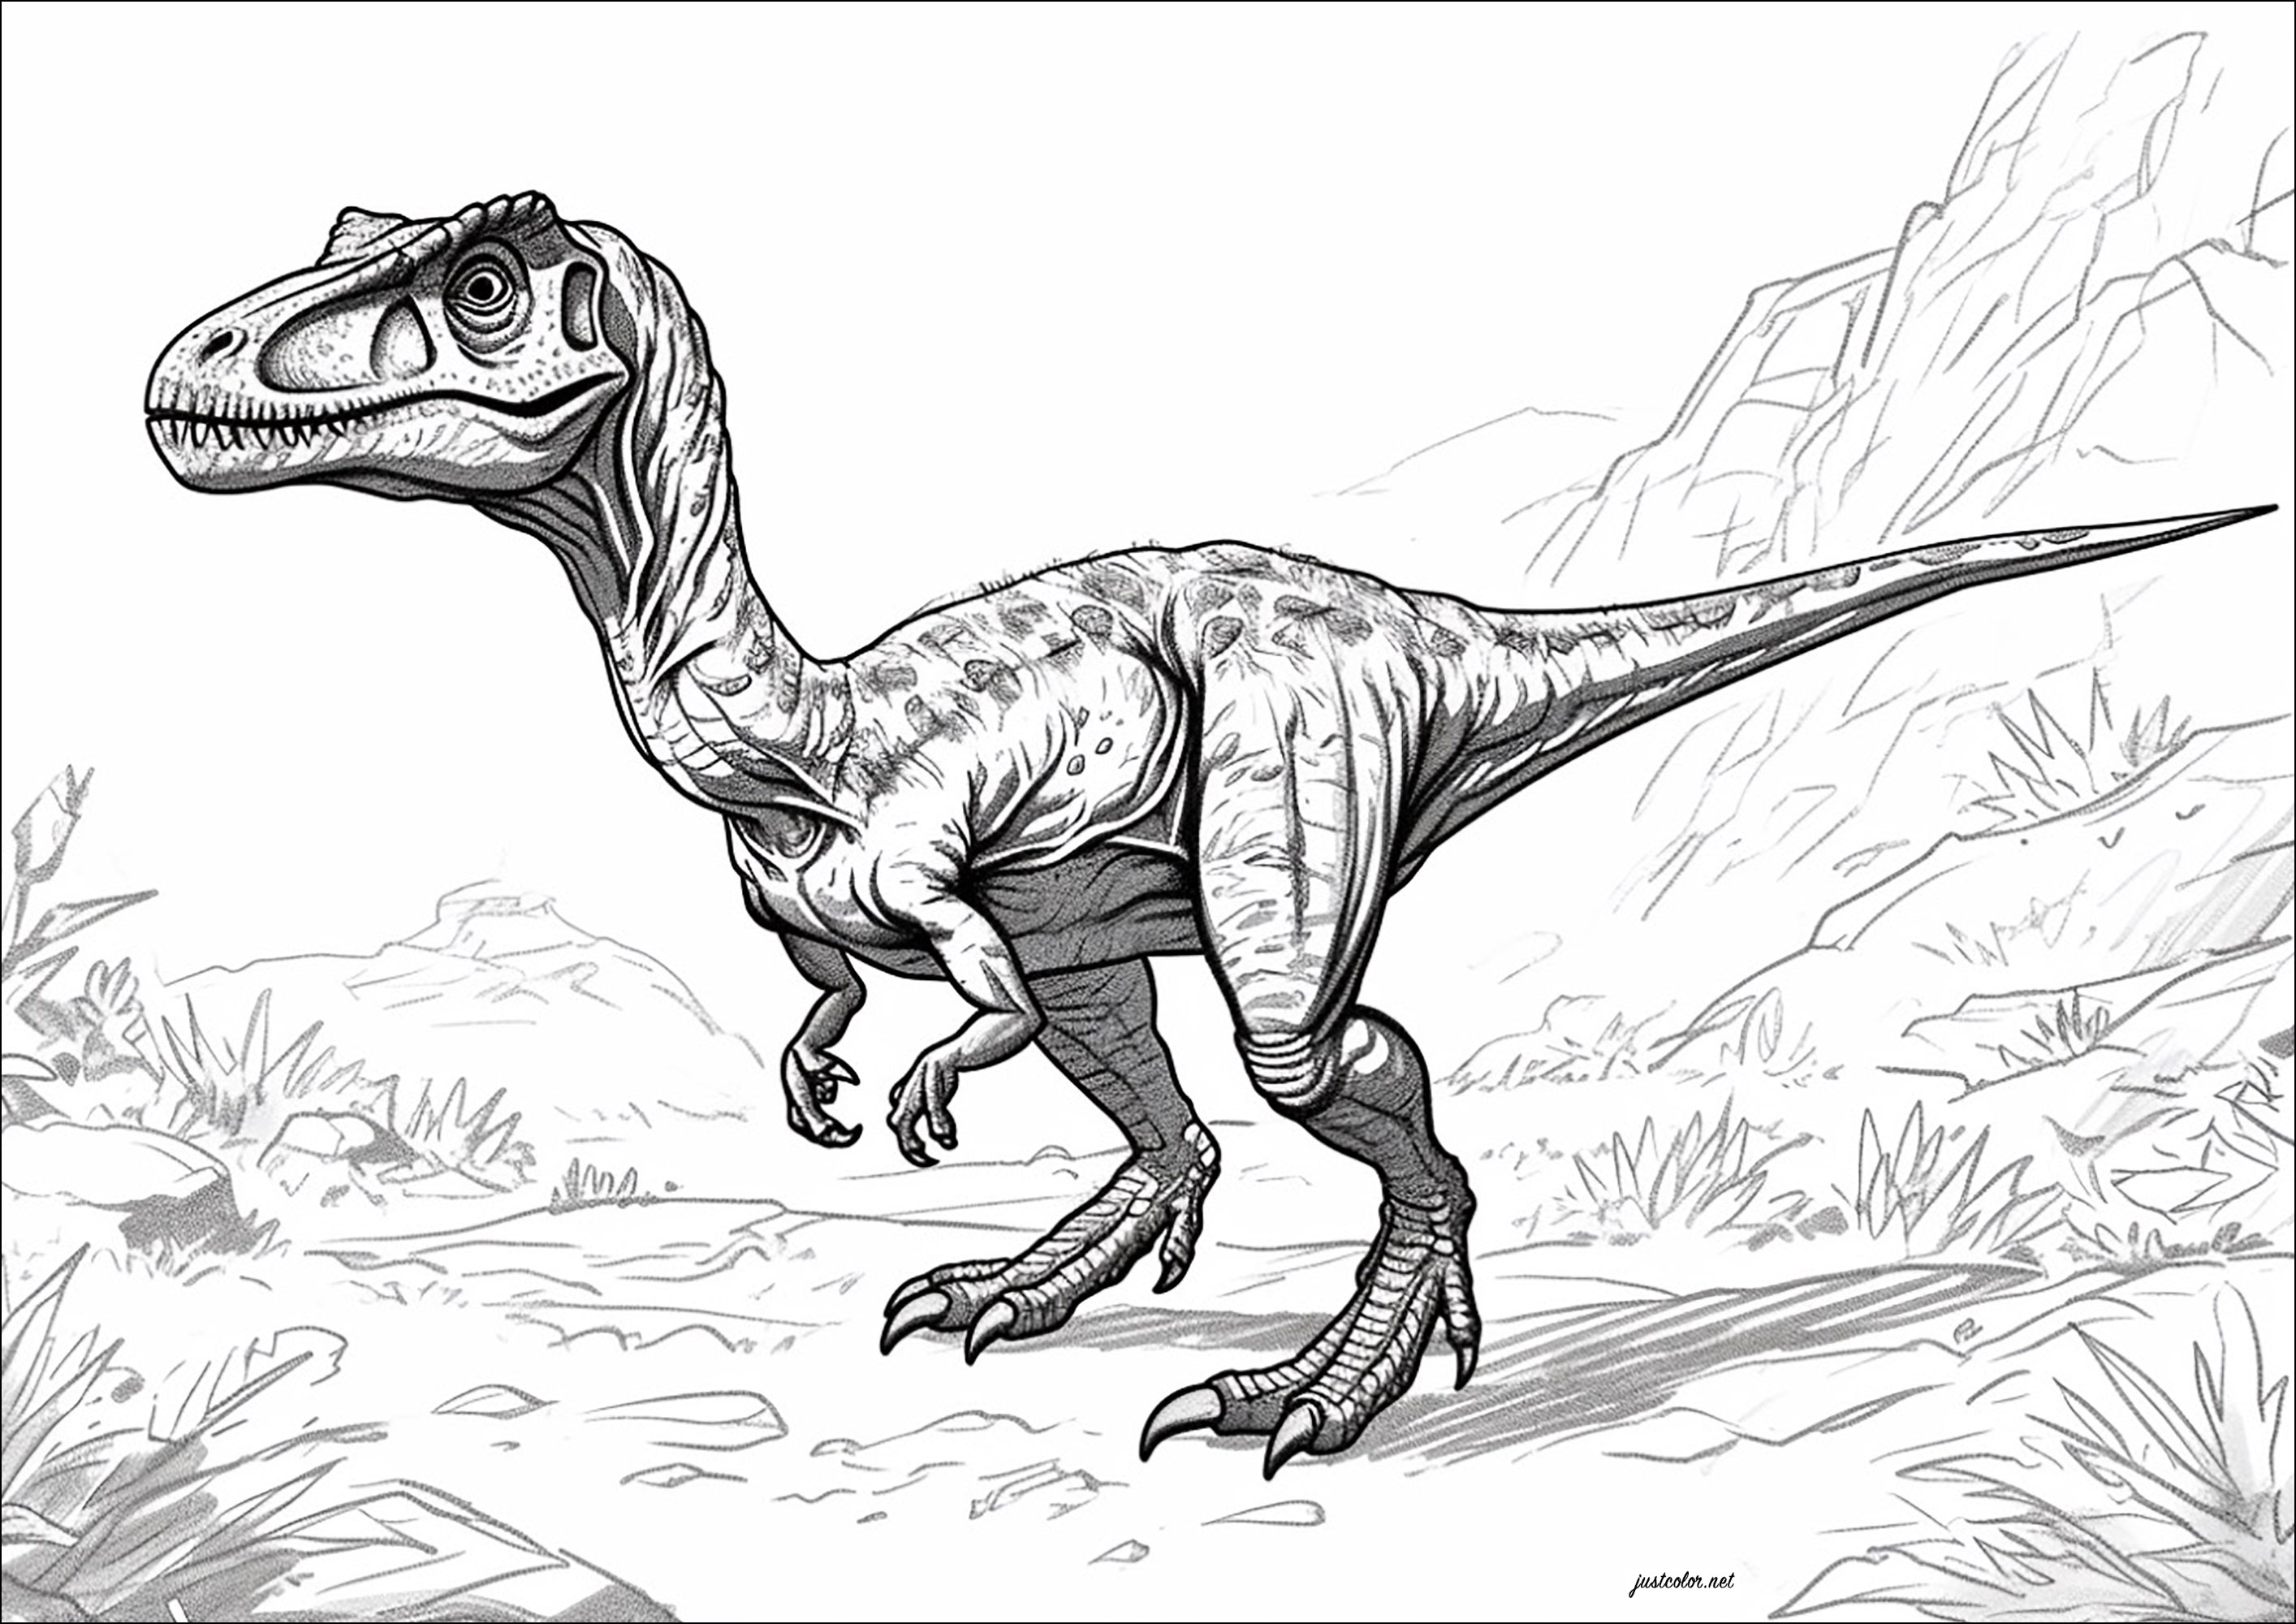 Velociraptor da colorare